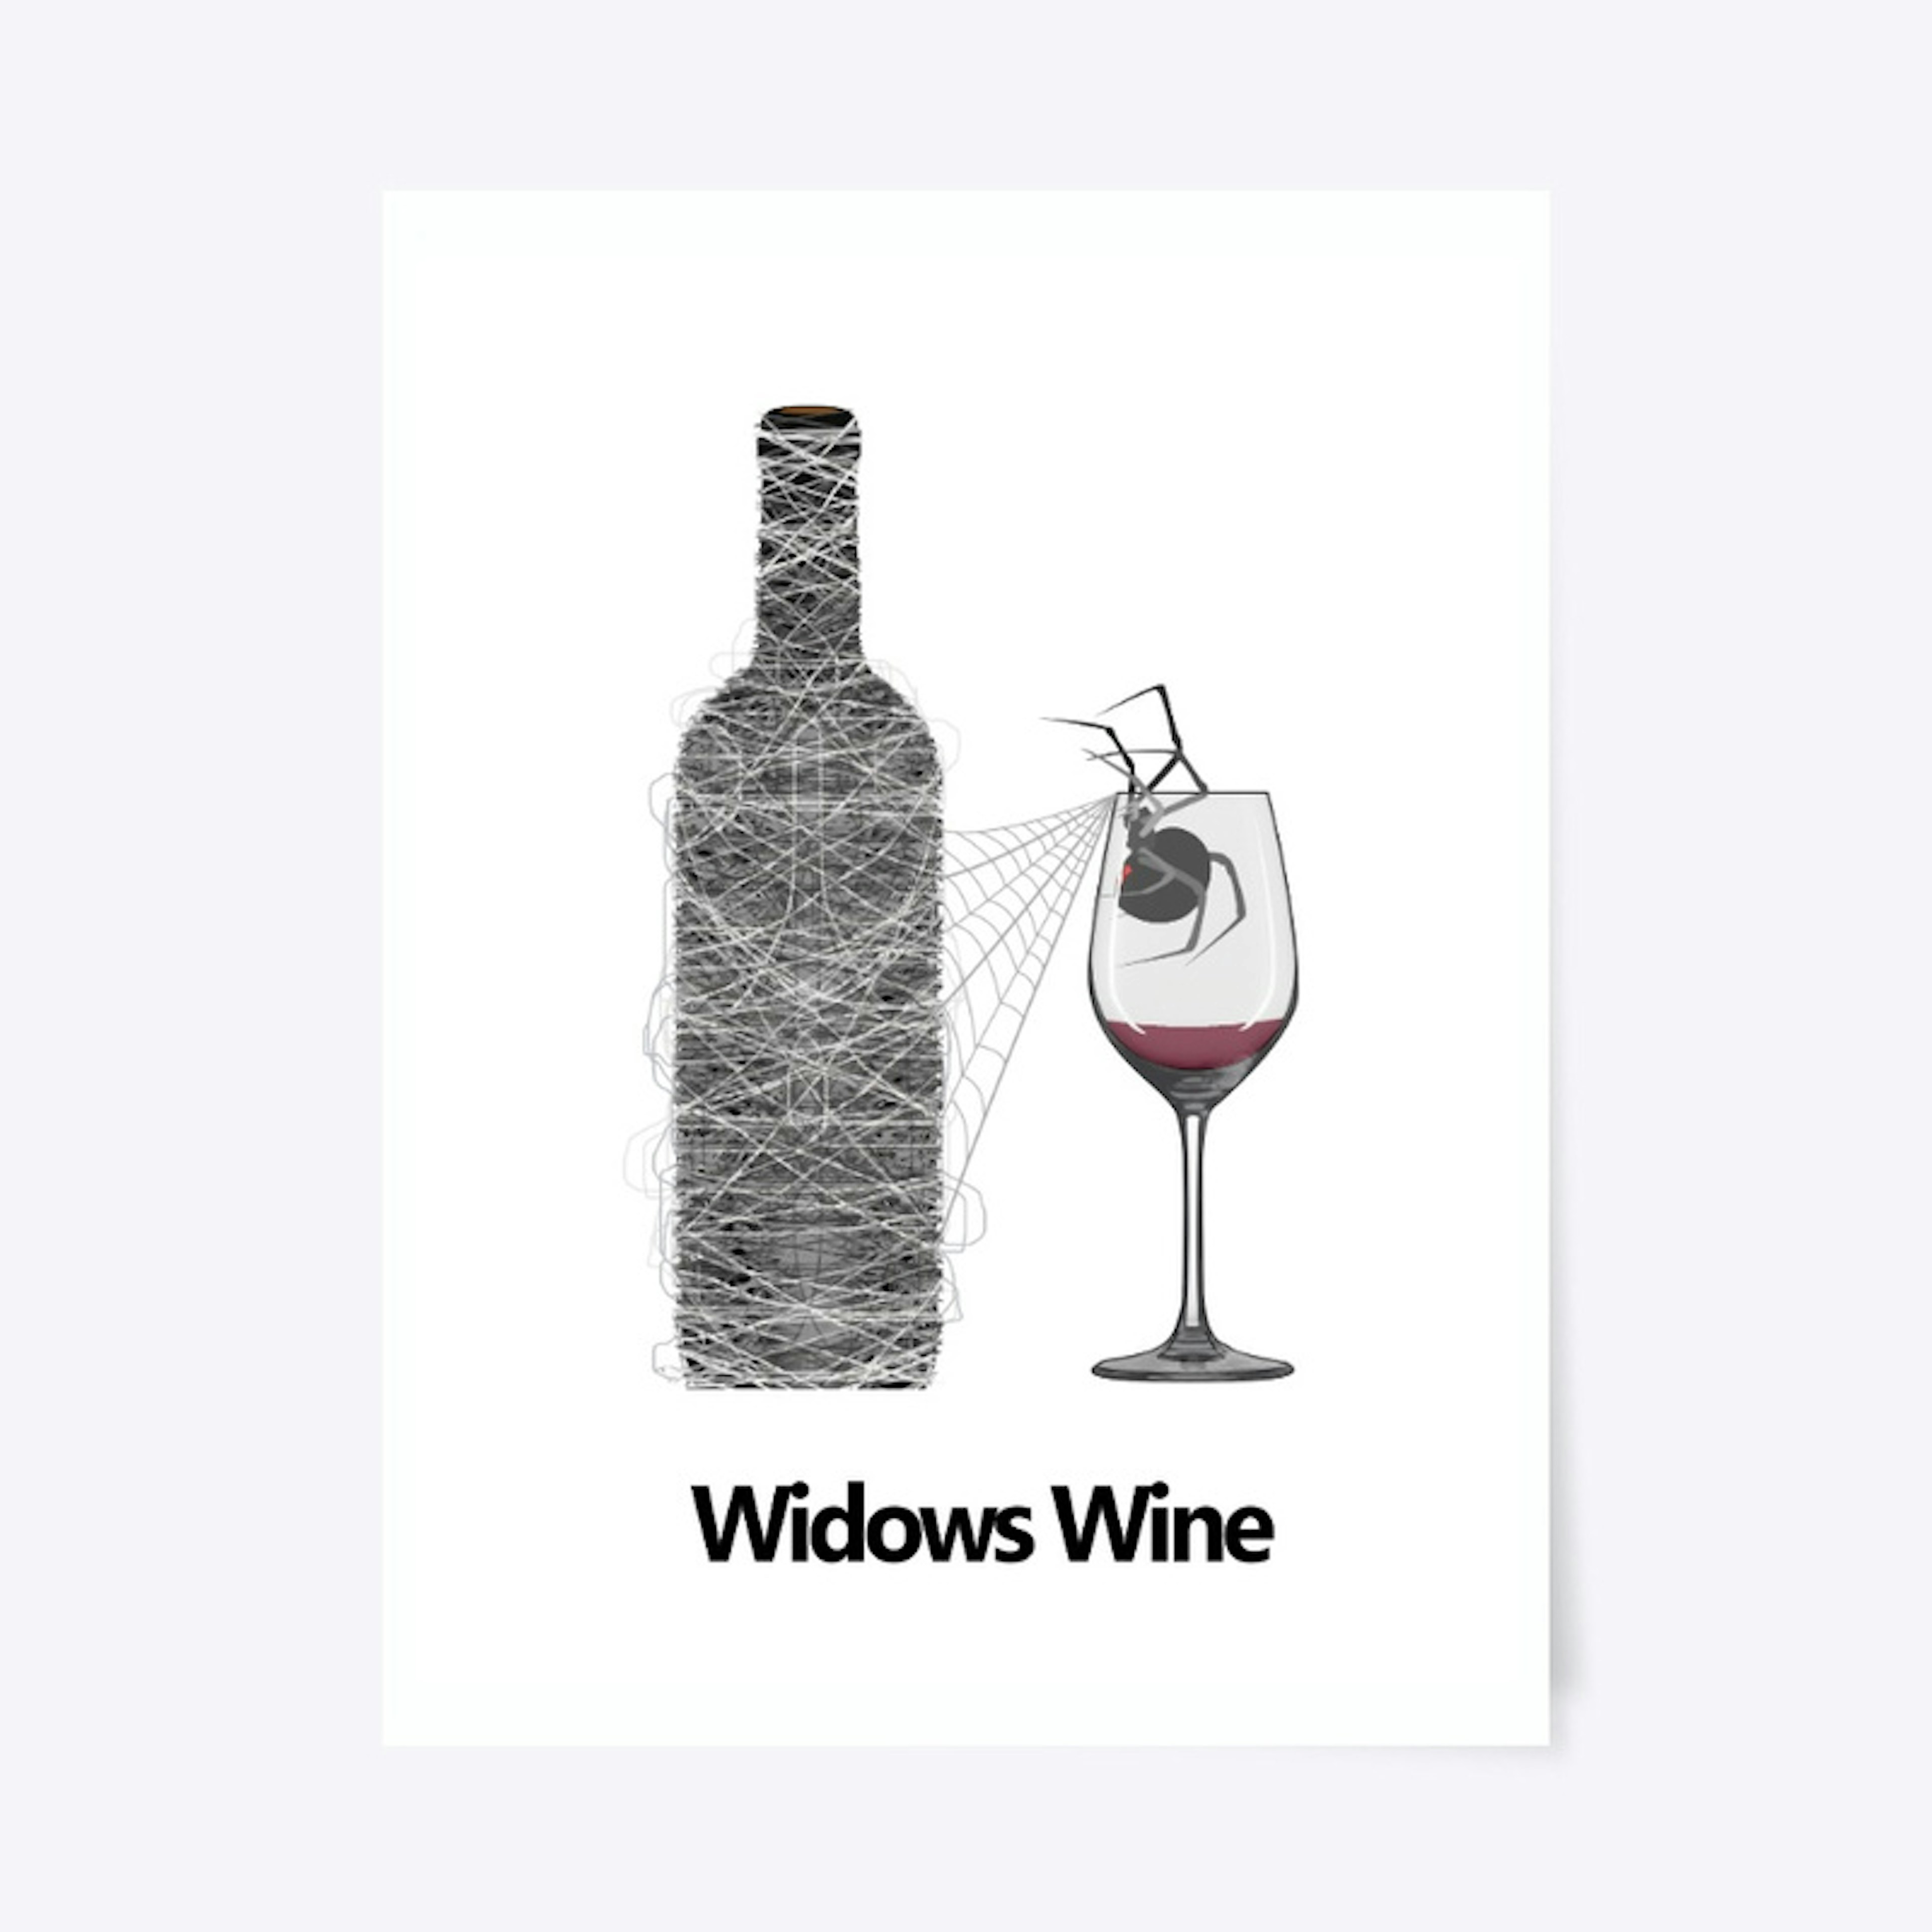 Widow's Wine